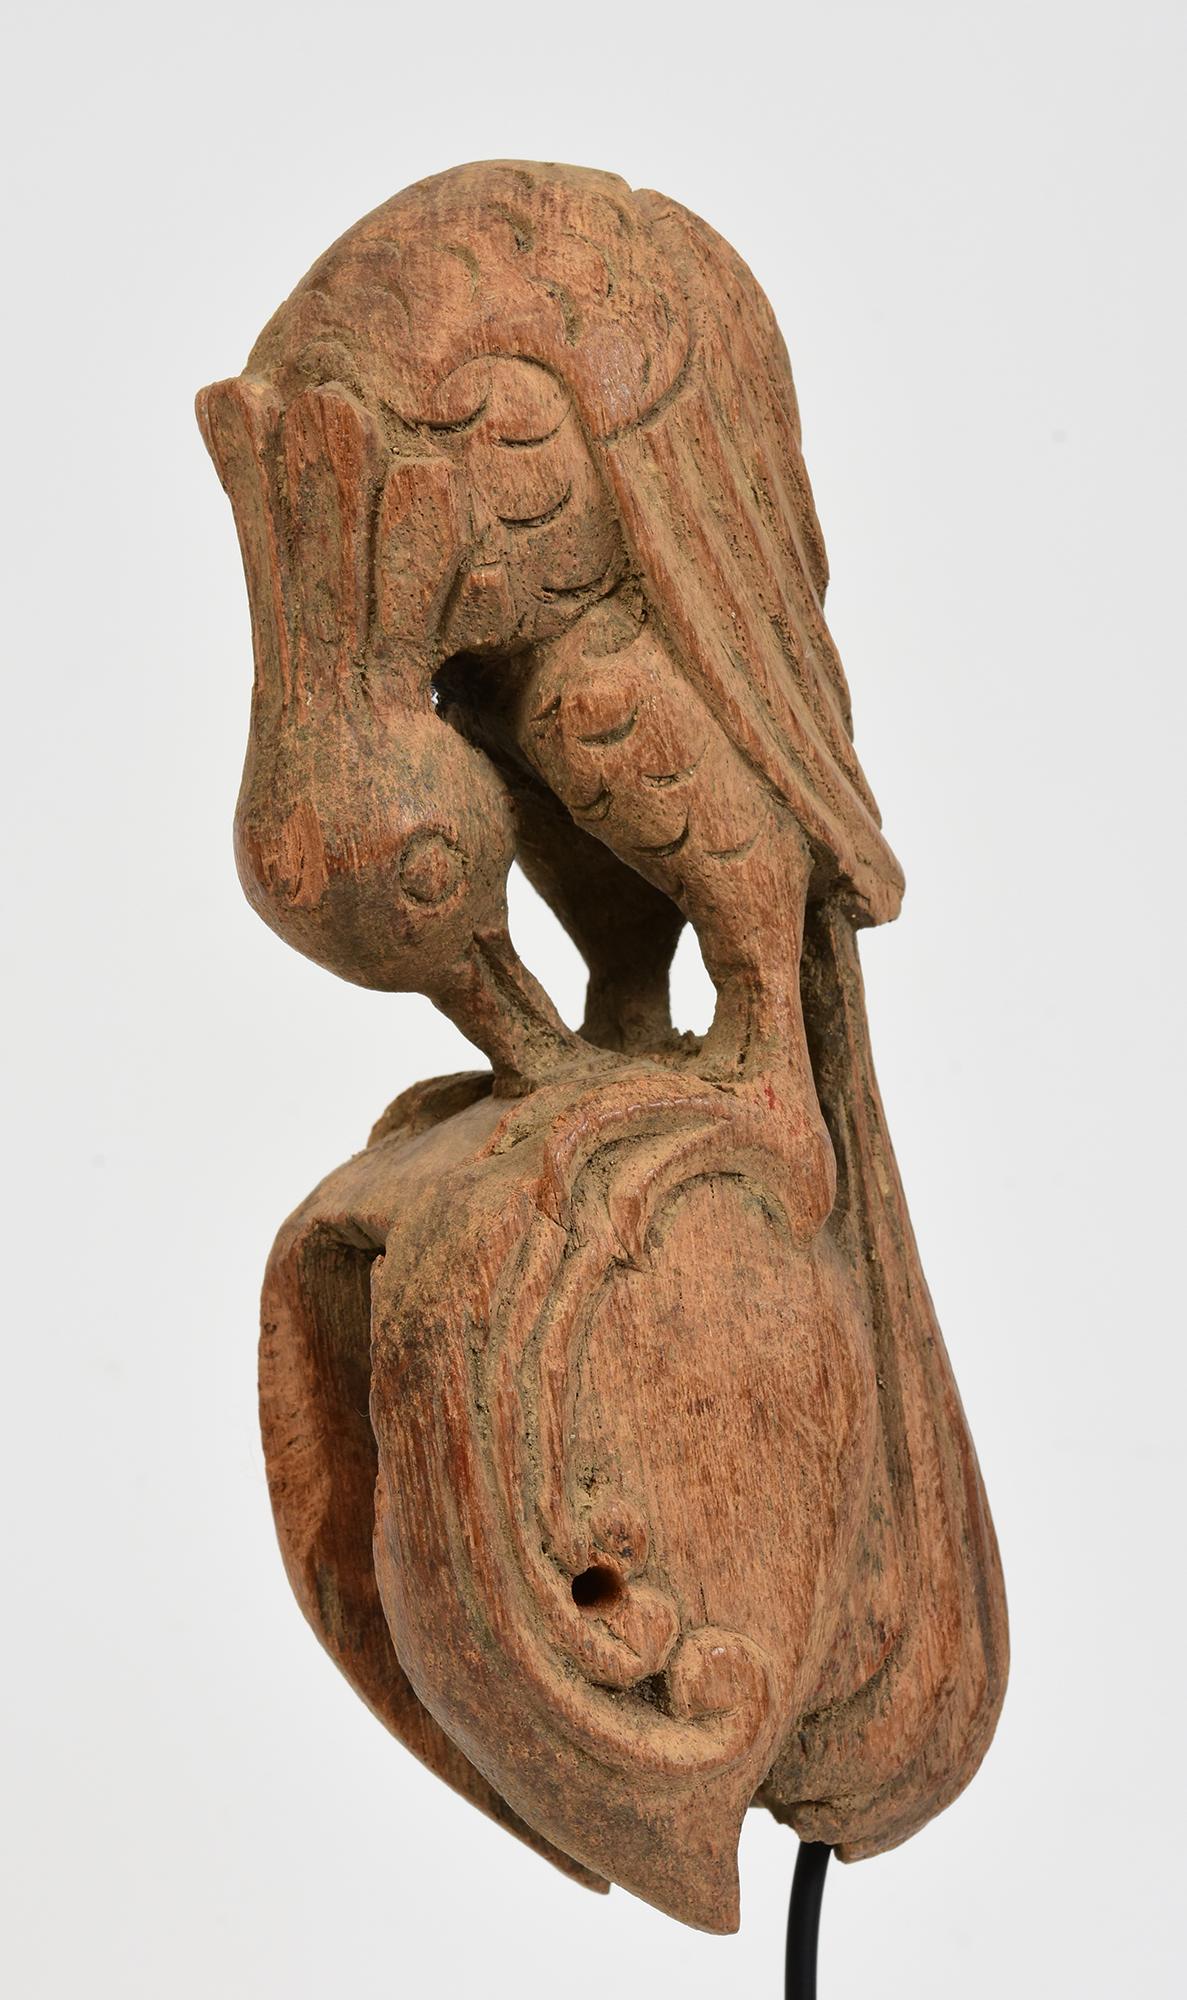 Ein Paar birmanische Textilwerkzeuge aus Holz in Form eines Vogels mit Ständer.

Alter: Birma, 19. Jahrhundert
Größe des Textils: Höhe 16 C.M. / Breite 4.8 - 5.2 C.M. / Tiefe 6.2 - 6.8 C.M.
Höhe mit Ständer: 29,7 - 33,7 C.M.
Zustand: Insgesamt guter